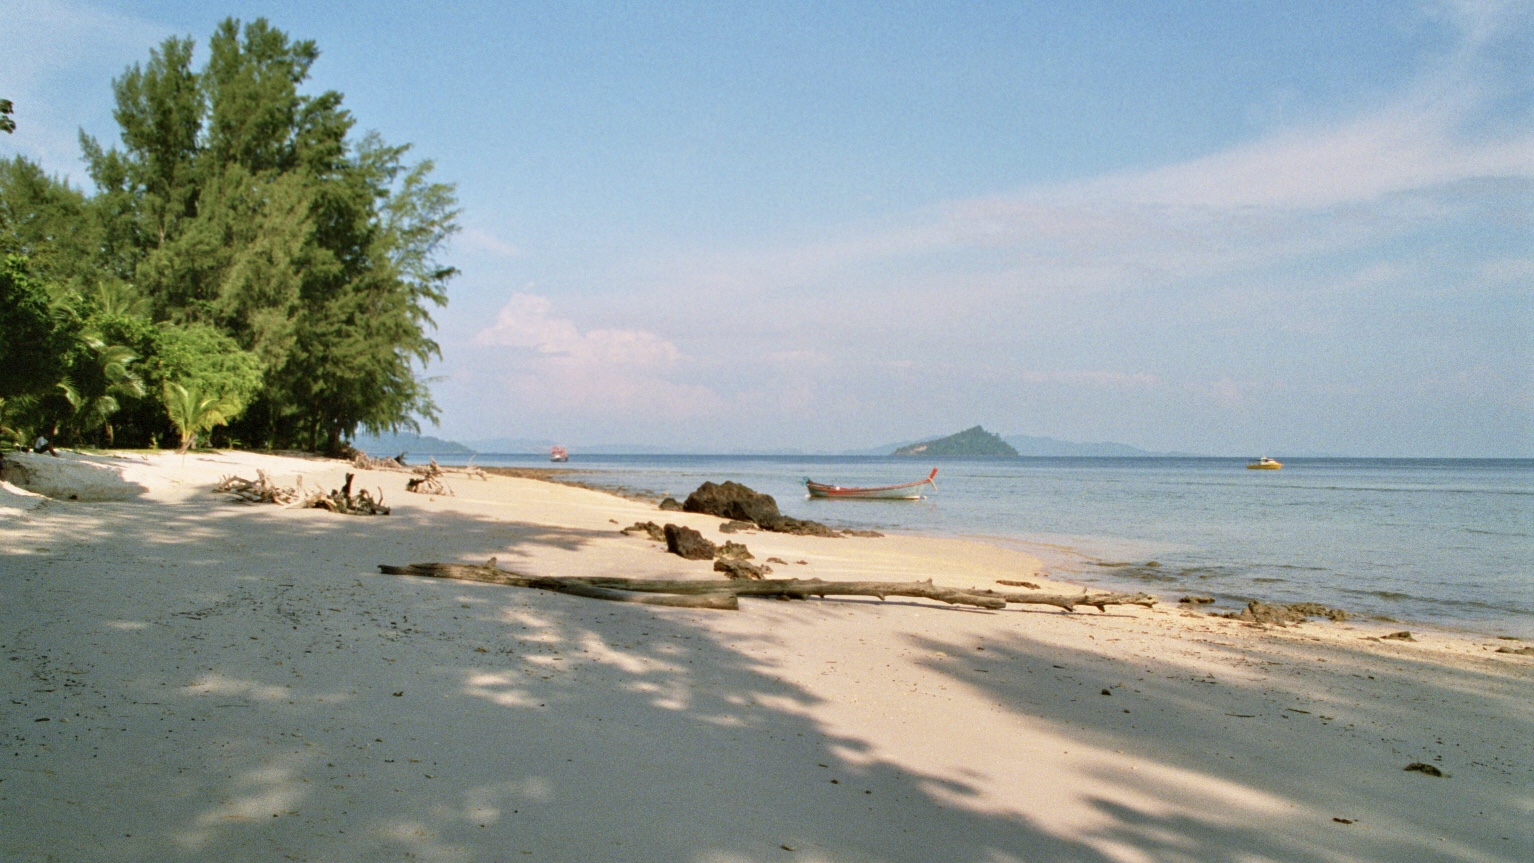 Thailand (2001), Ko Bulon - Beach